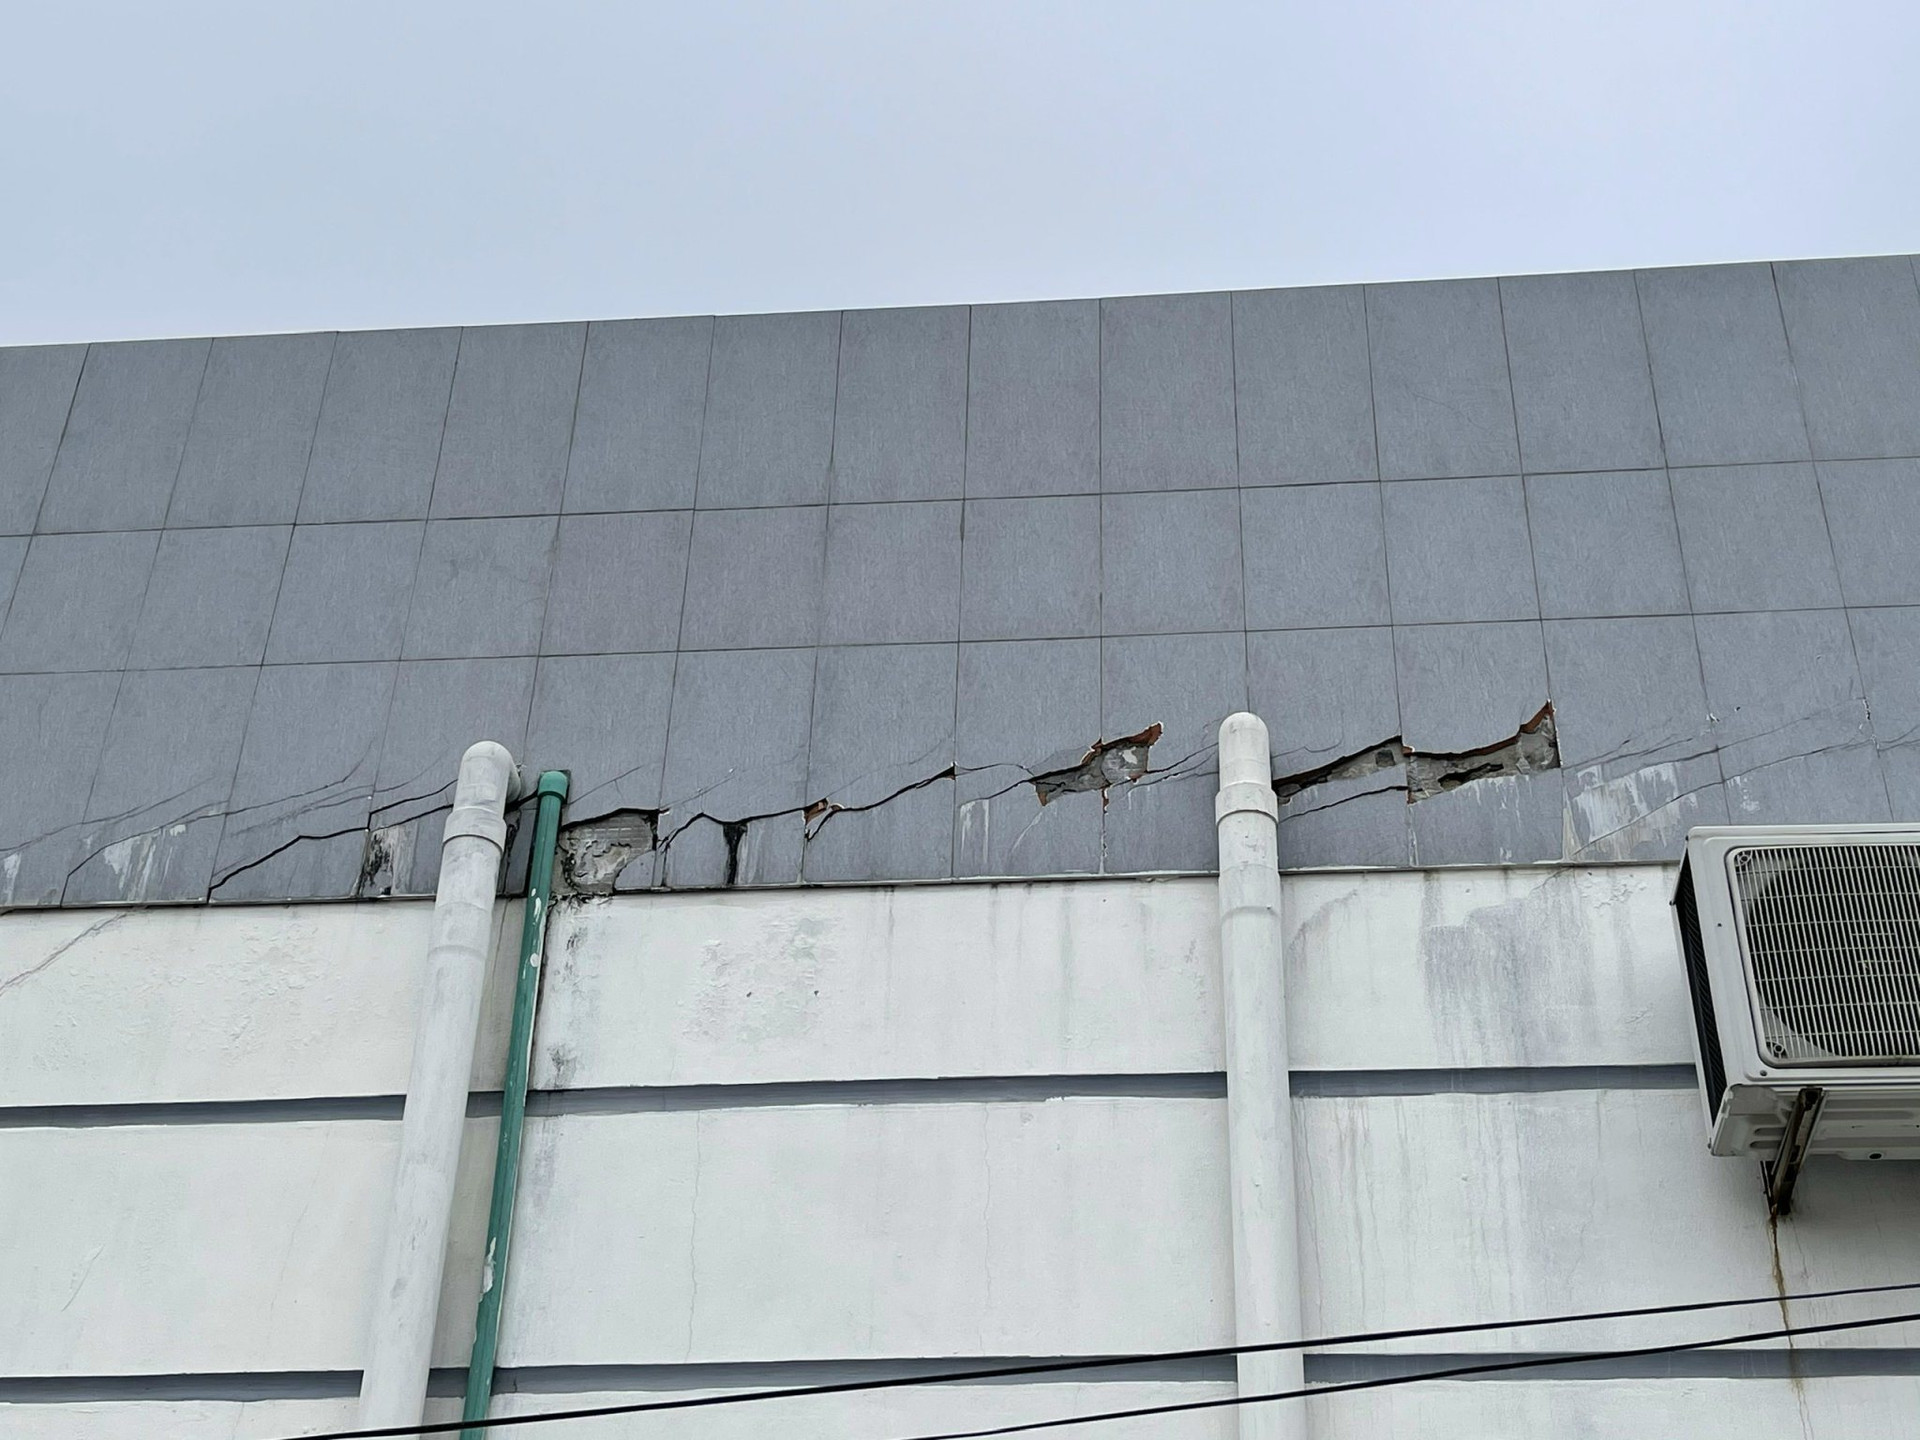 Người dân xung quanh Trung tâm văn hoá huyện Yên Khánh cho hay, cách đây vài tháng, họ đã thấy việc bong tróc của lớp sơn, các vết nứt dọc tường cũng như việc đá ốp rơi vỡ rồi. Thật lạ khi một dự án lớn của huyện mà mới 3 năm thôi đã xuống cấp như vậy.